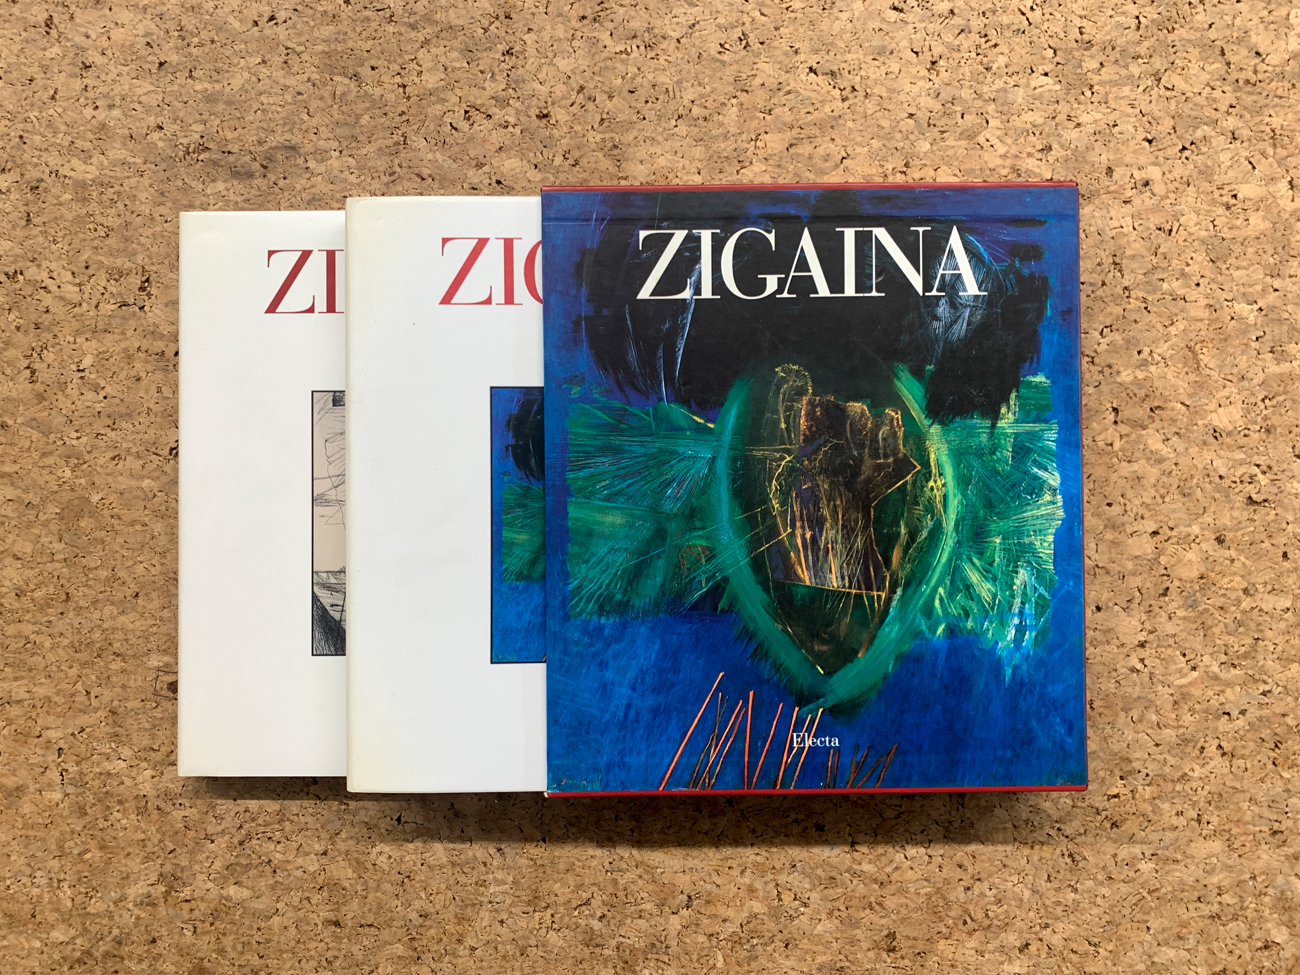 GIUSEPPE ZIGAINA - Zigaina, 1995